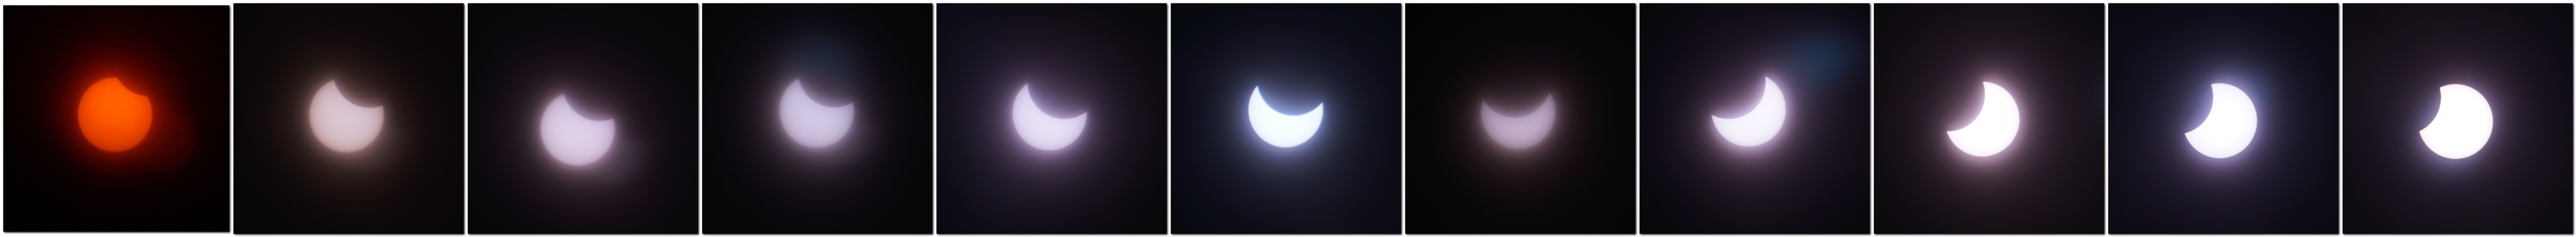 Солнечное затмение 8 апреля для знаков зодиака. Солнечное затмение в телескоп. Солнечное затмение 2022. Лунное затмение 2022. Солнечное затмение 2022 Новосибирск.